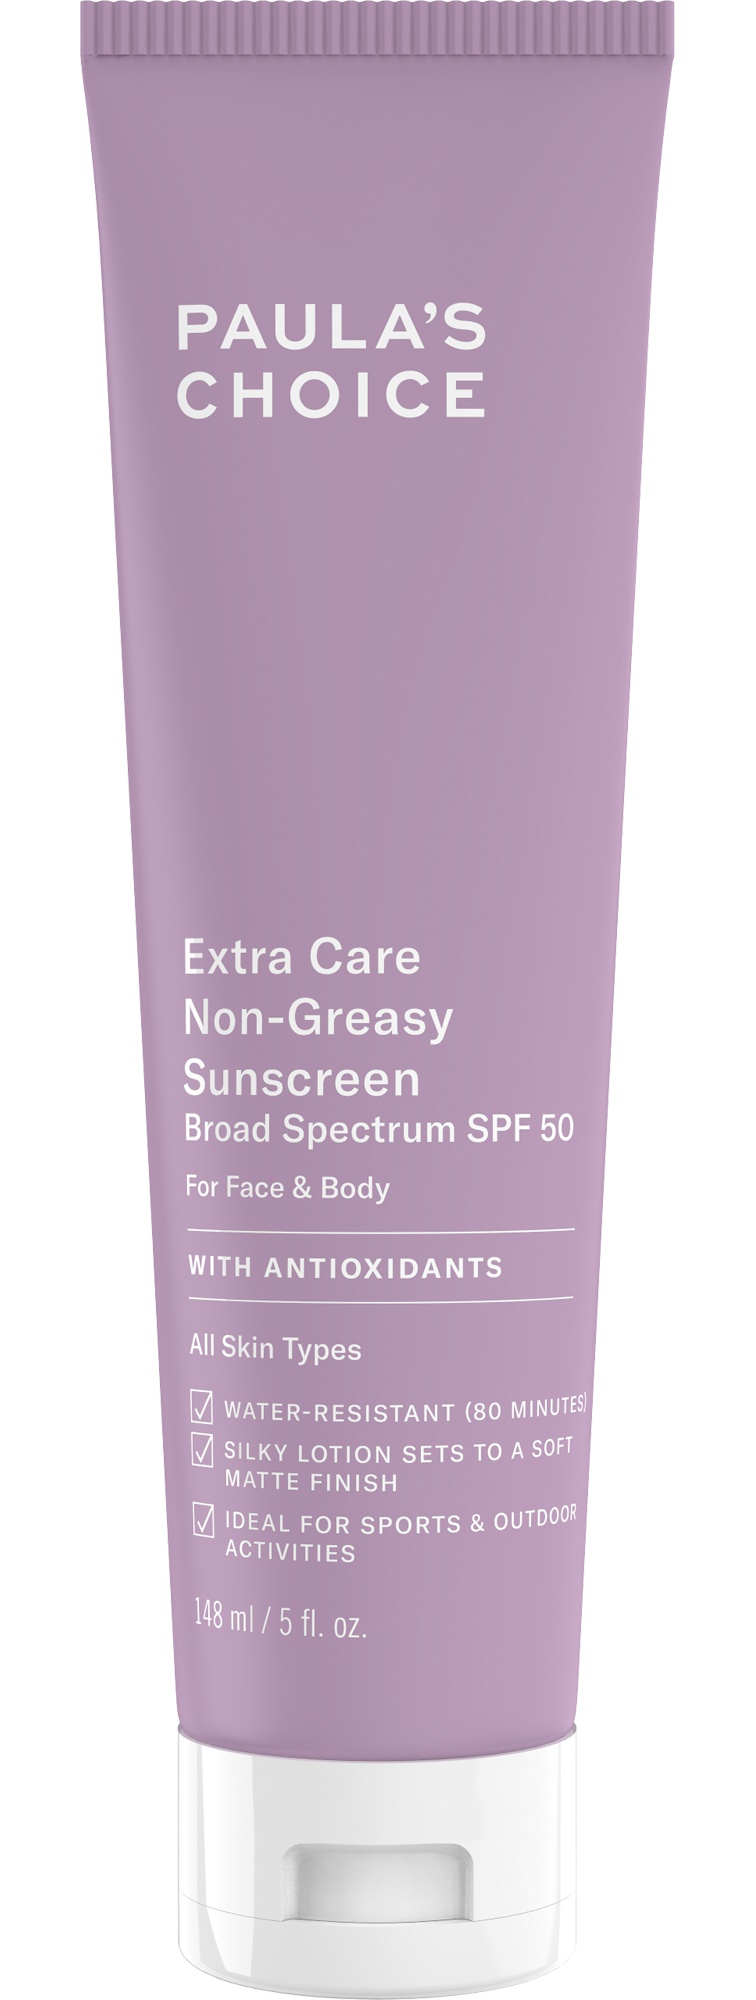 Paula's Choice Extra Care Non-greasy Sunscreen SPF 50